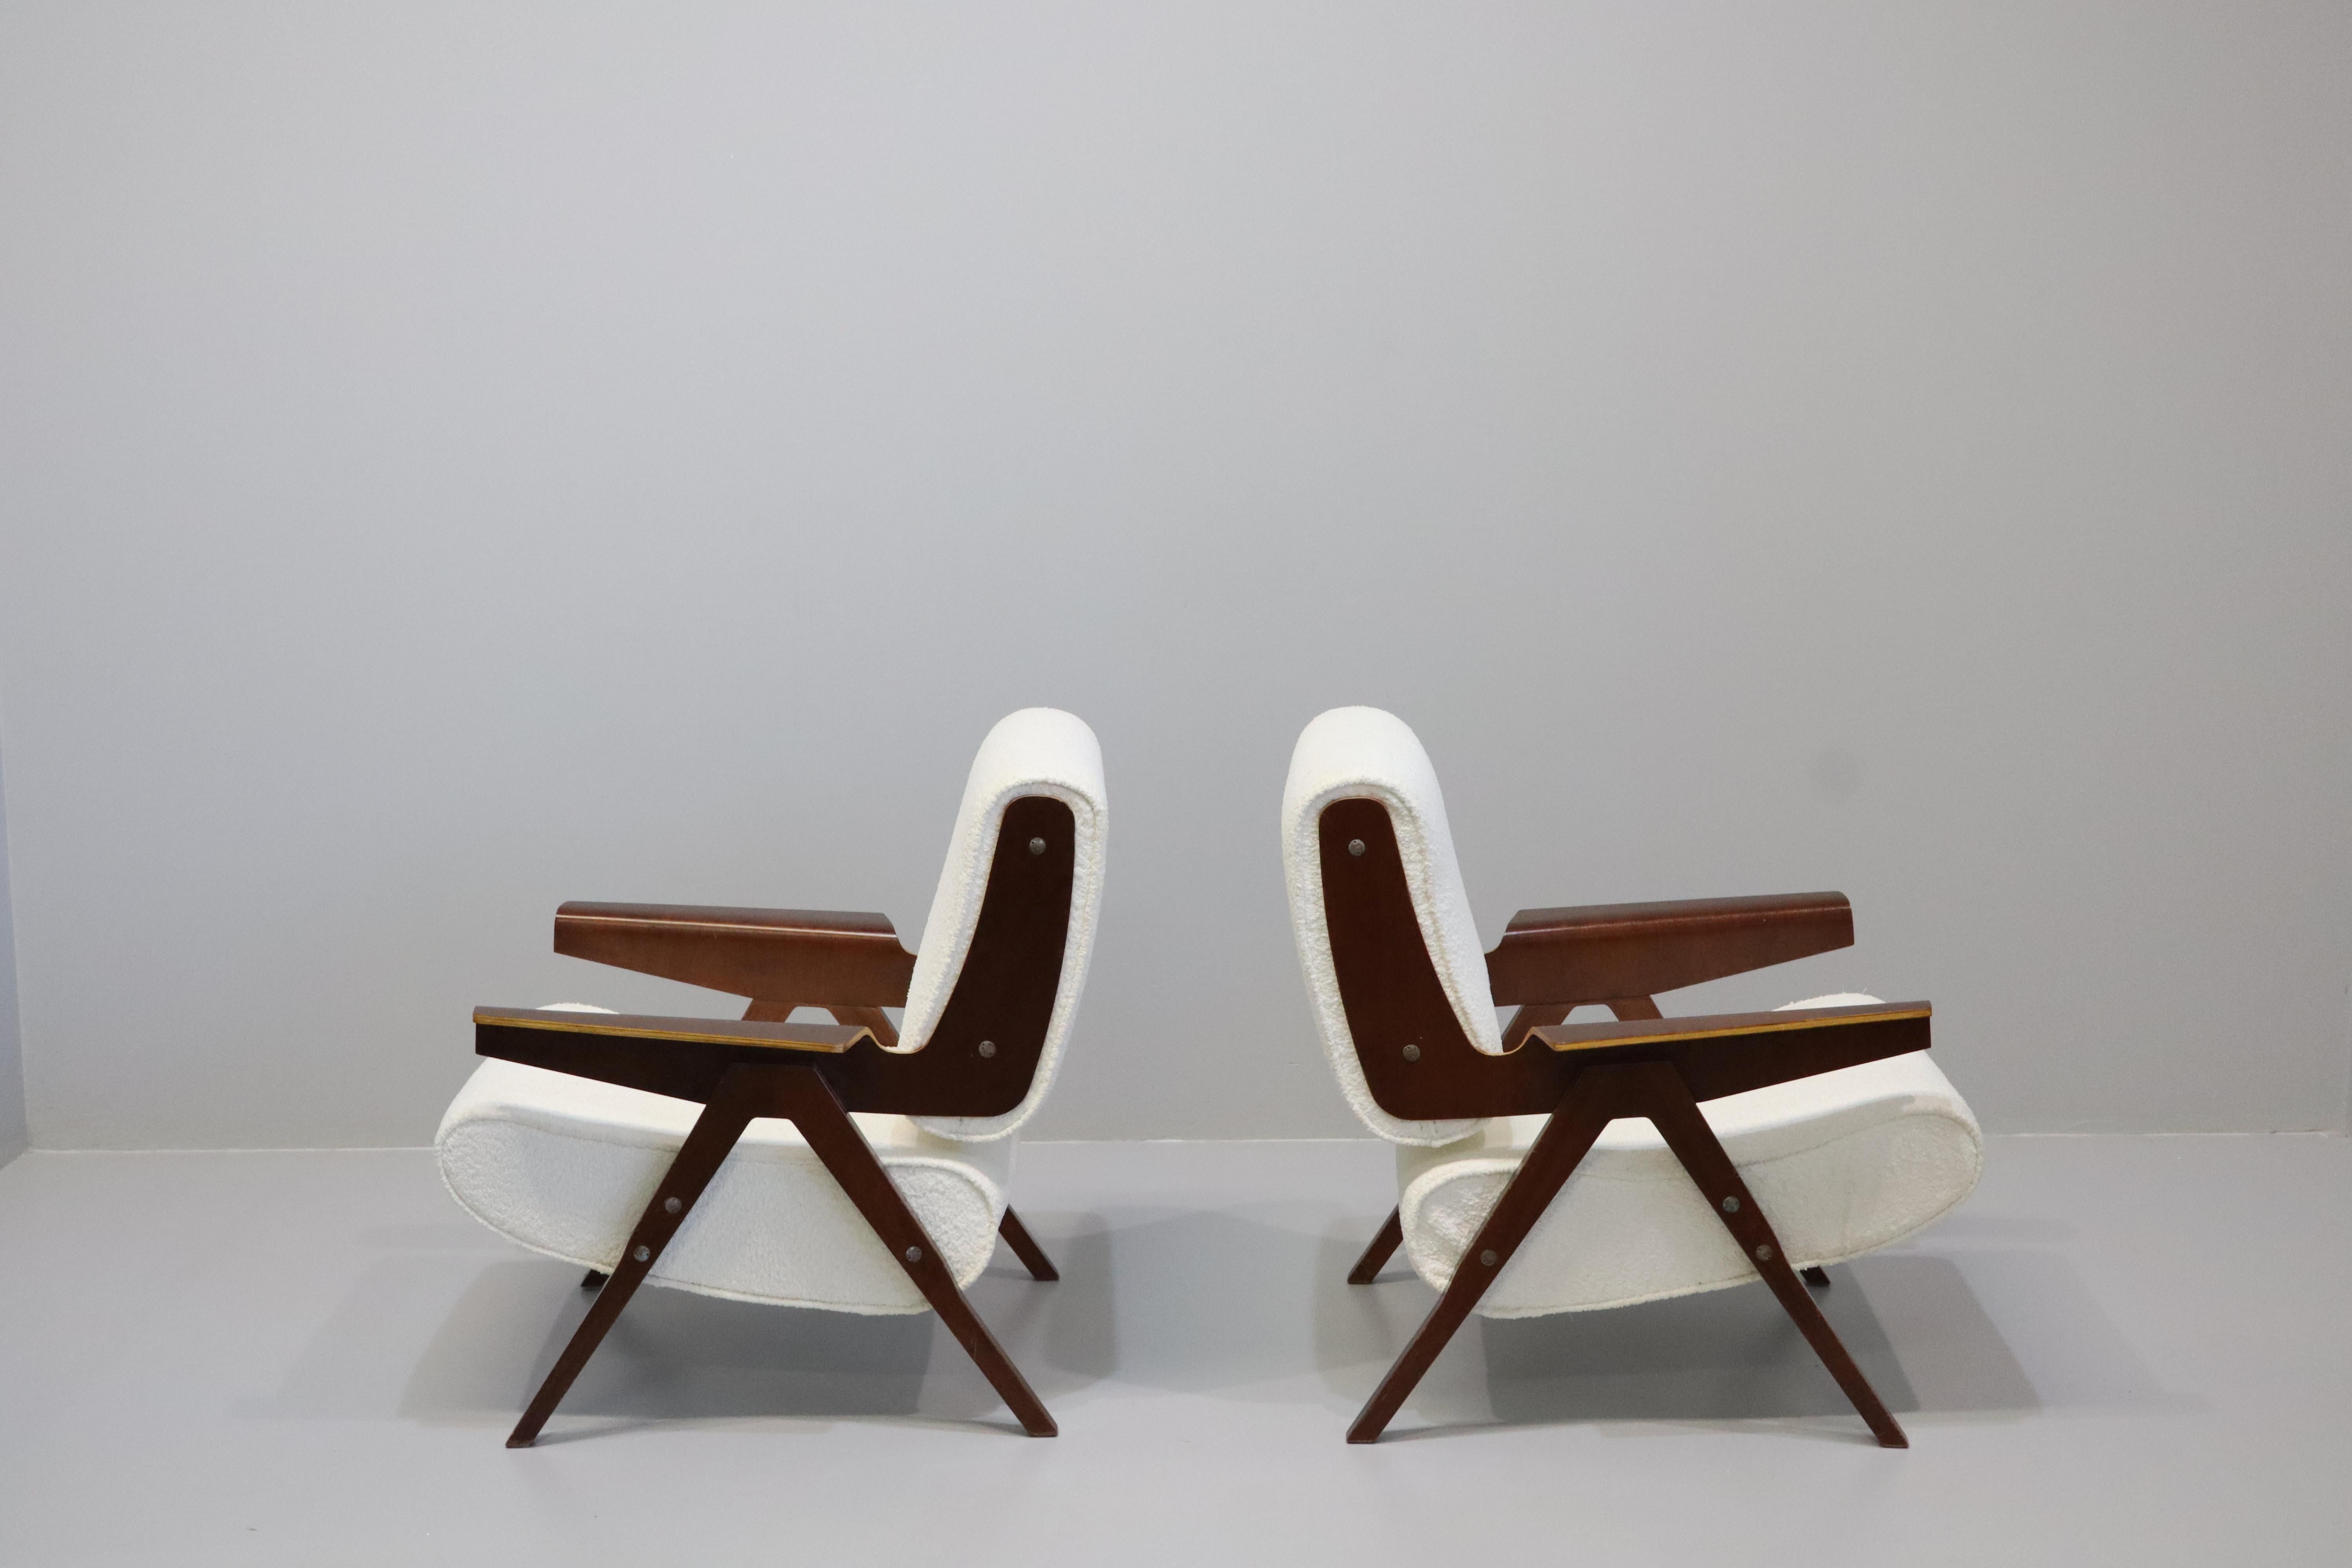 Incroyable paire de chaises modèle 831 par Gianfranco Frattini pour Cassina, années 1950. 
Ces modèles de chaises sont exceptionnellement rares. 
Le design fantastique du célèbre designer italien Gianfranco Frattini montre ses caractéristiques